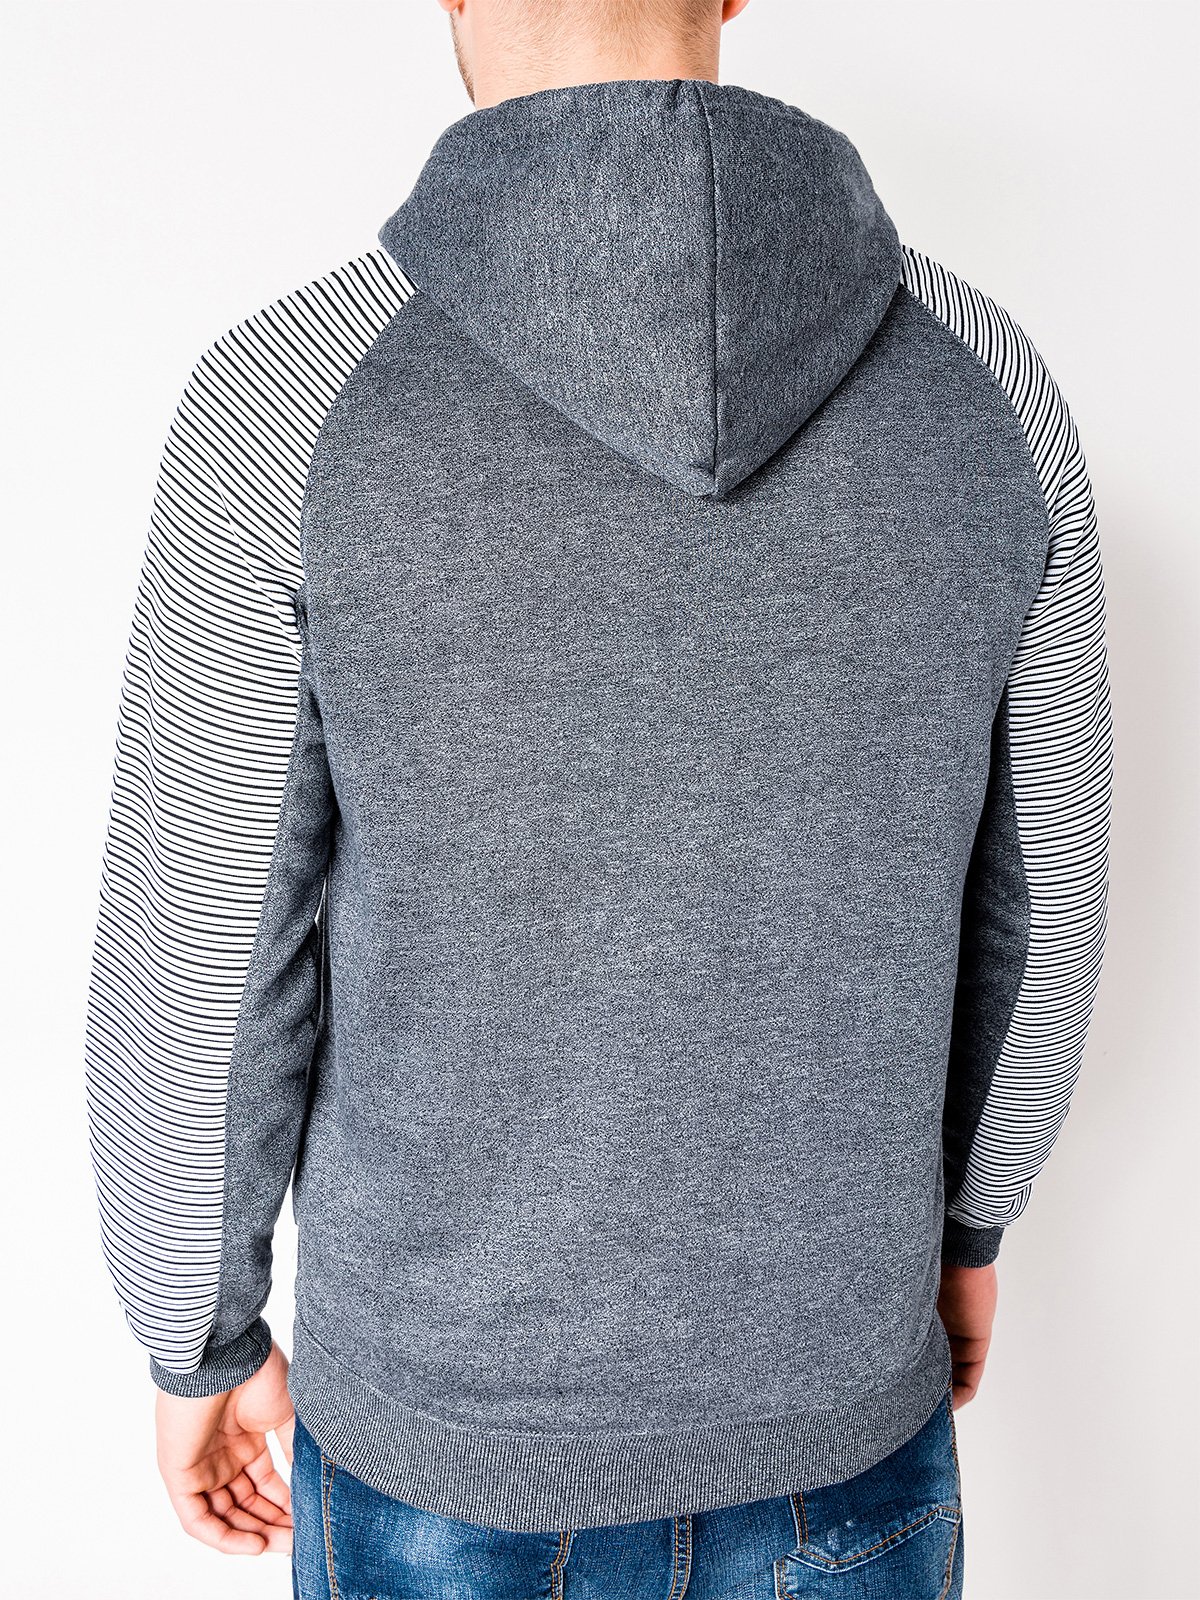 Download Men's zip-up hoodie B820 - blue/melange | MODONE wholesale ...